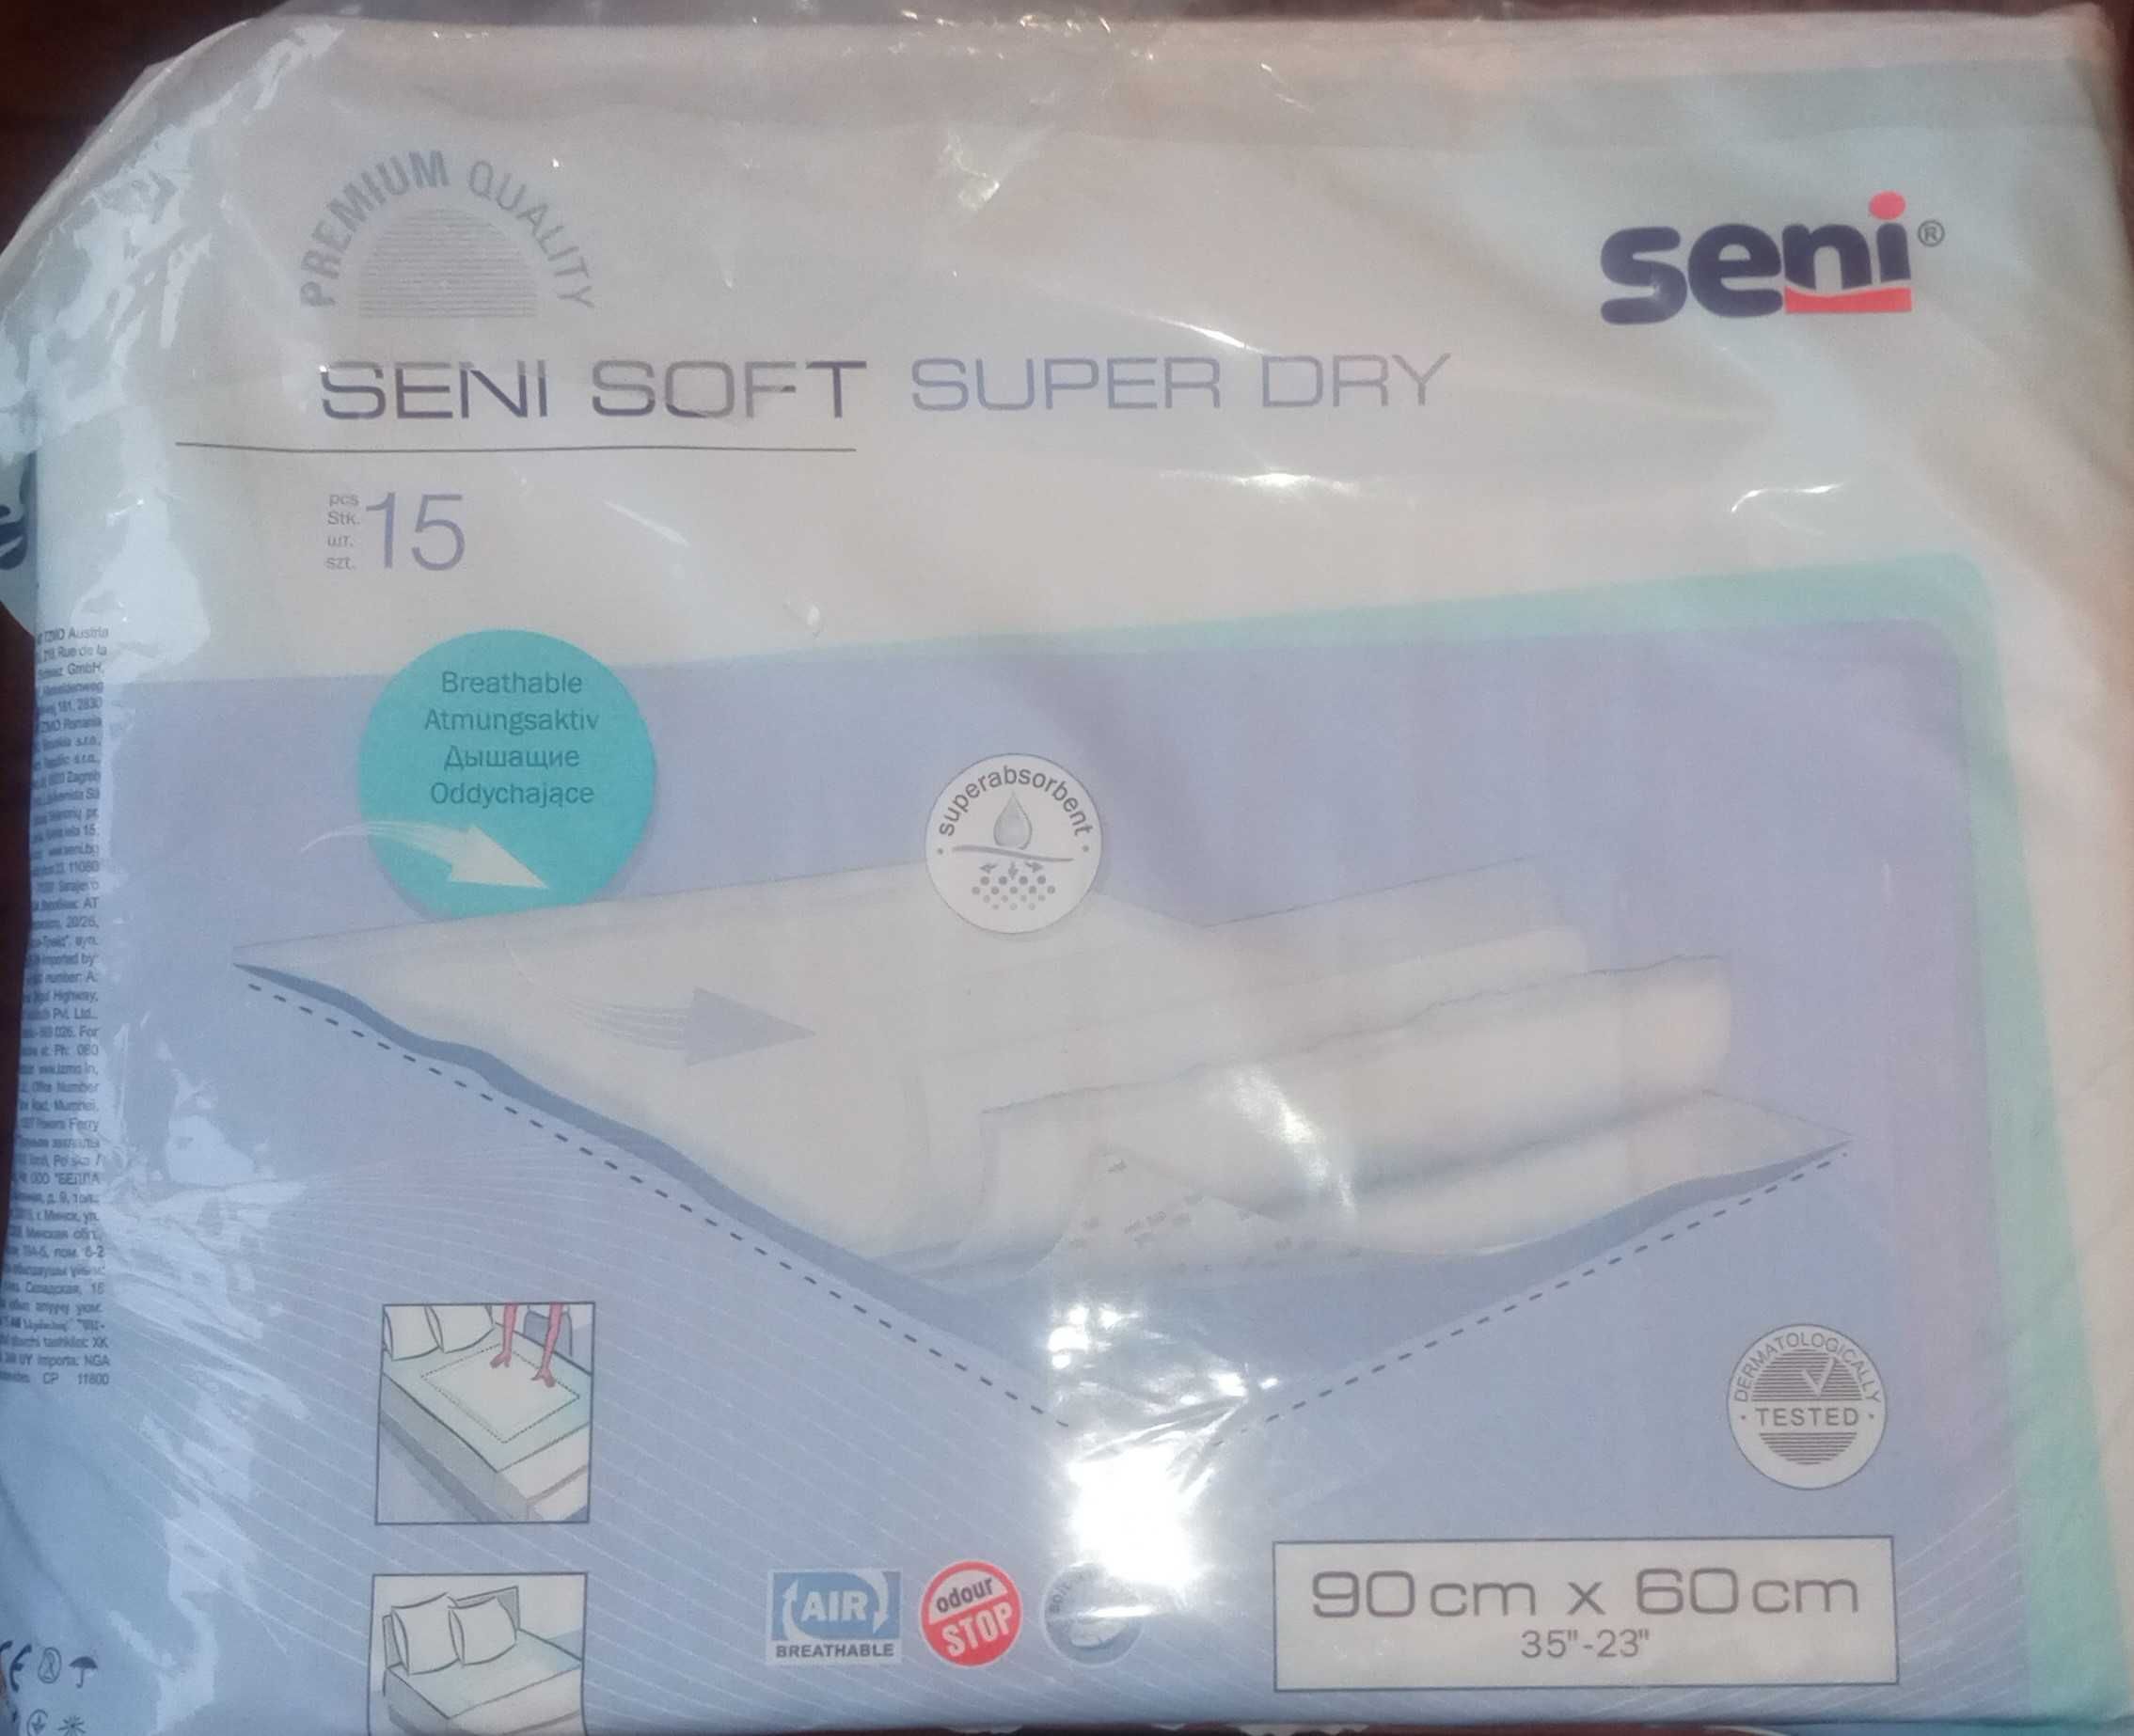 Podkłady higieniczne 60x90cm 15szt. Seni Soft Super Dry.